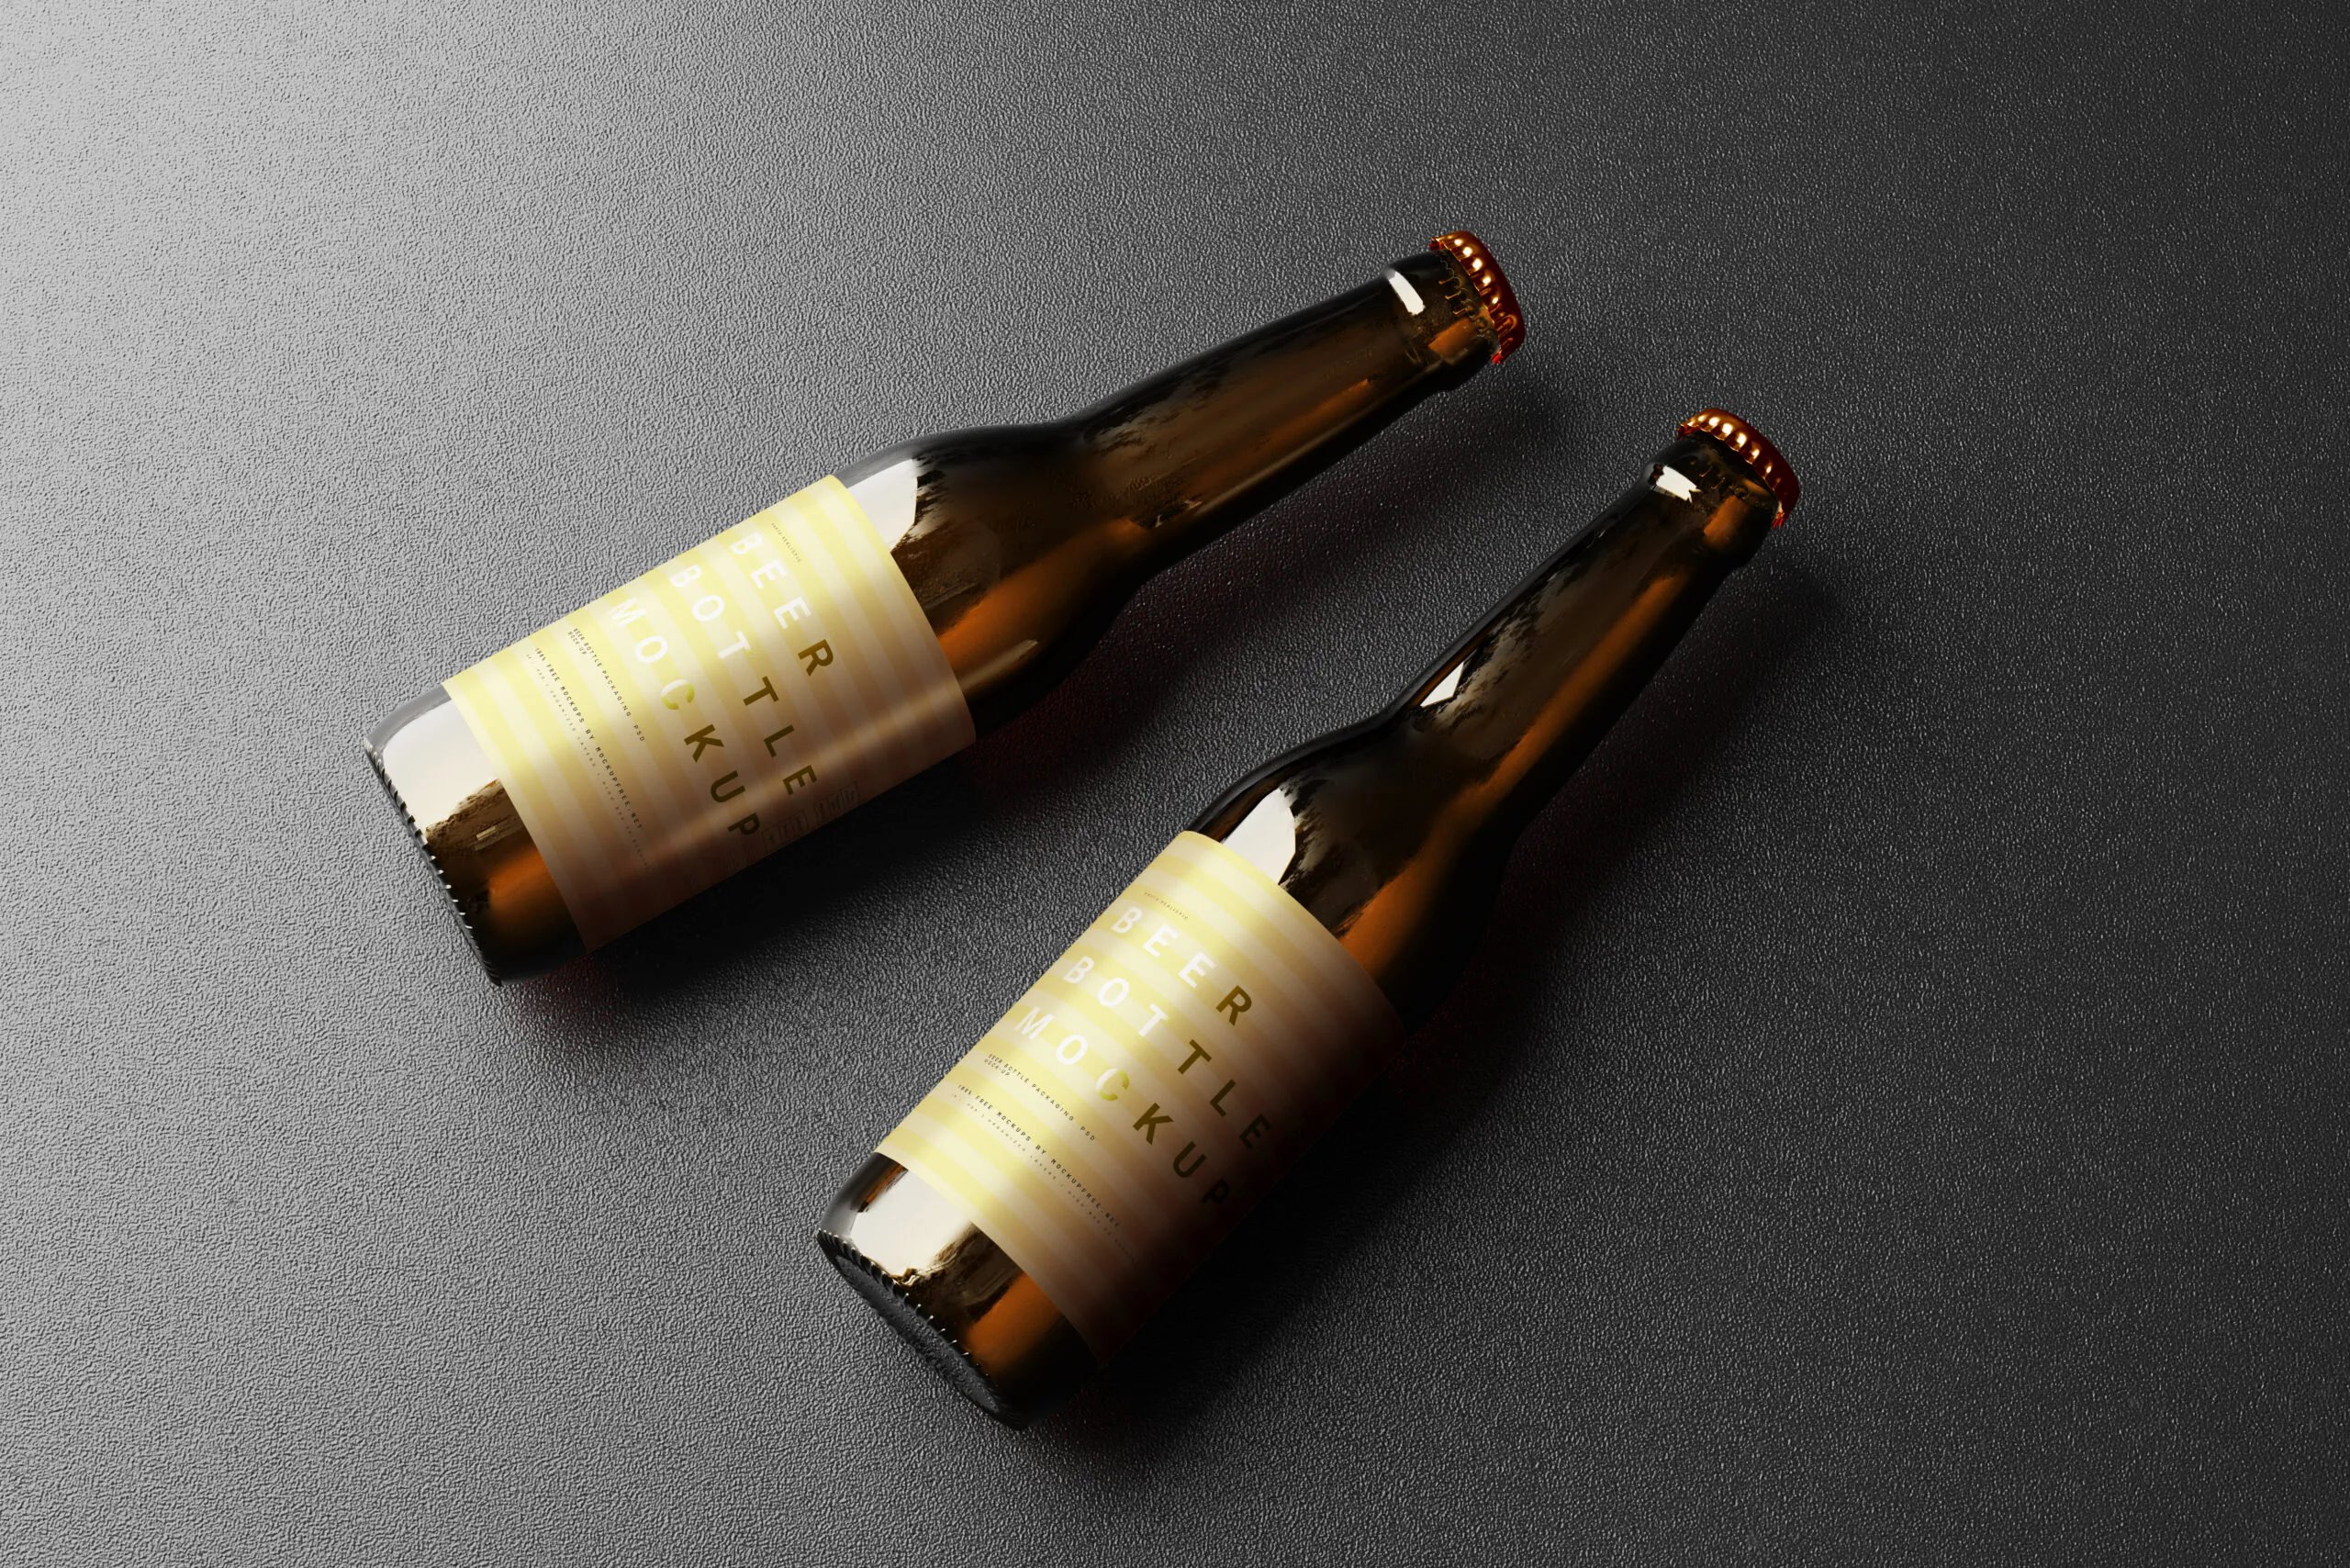 10 Mockups of Slim Beer Bottles in Varied Visions FREE PSD